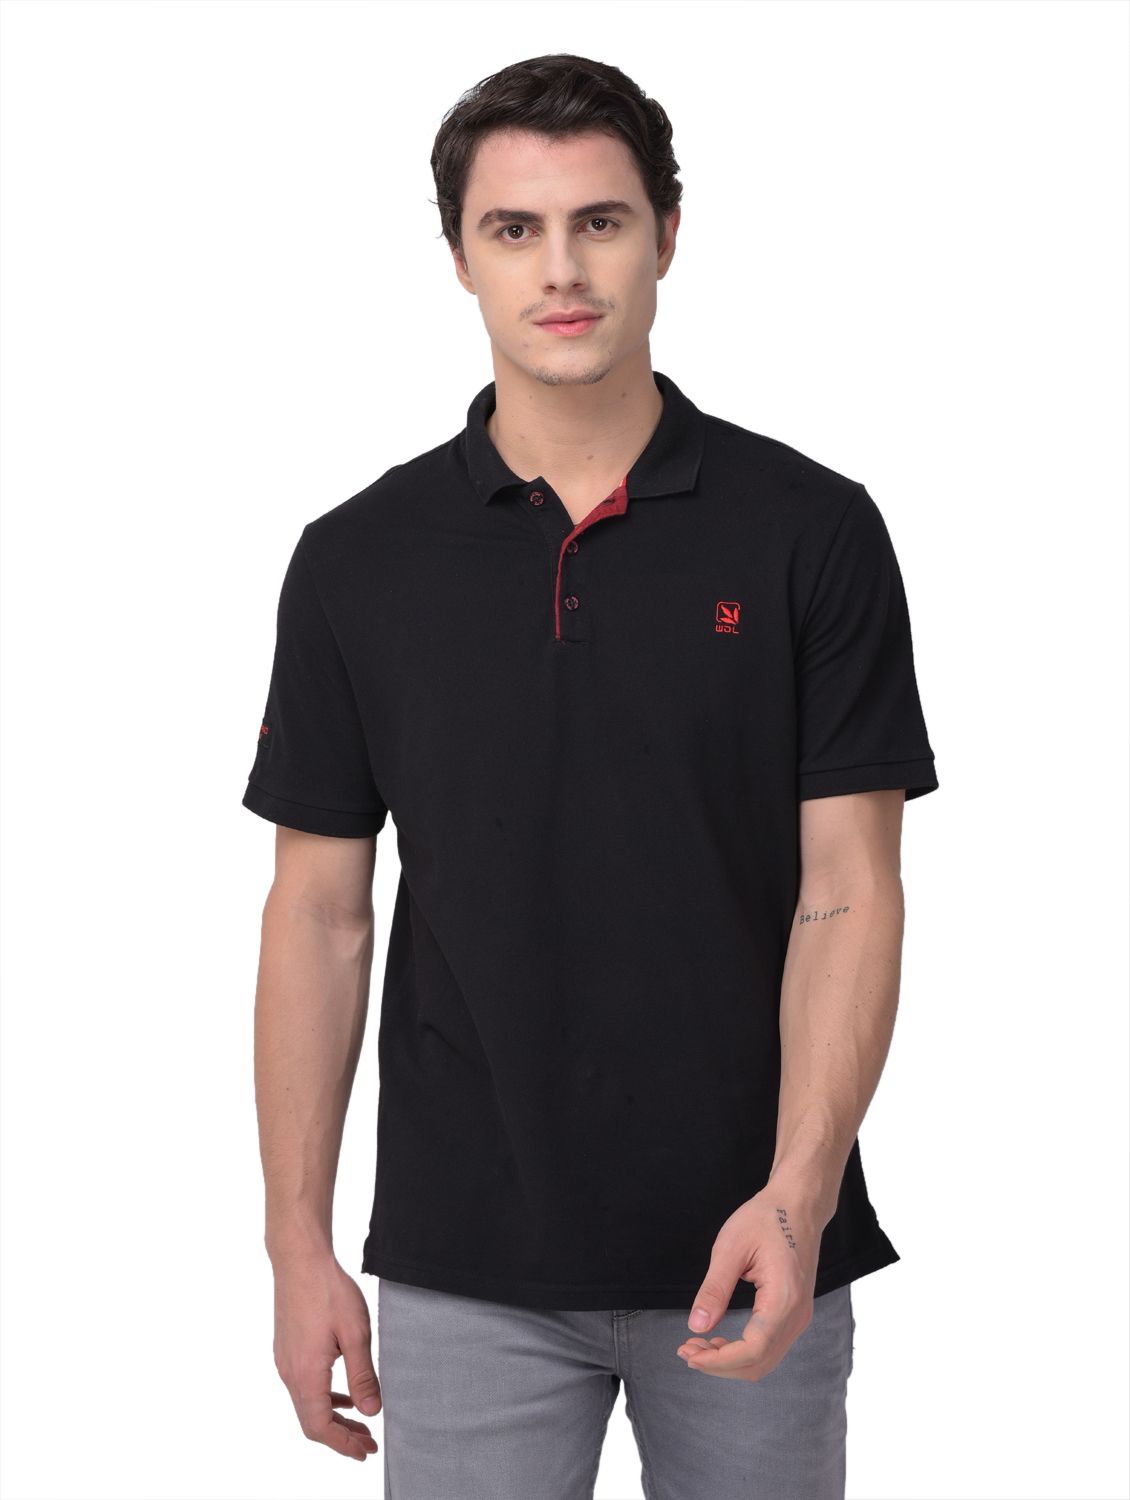 Black polo neck t-shirt for men